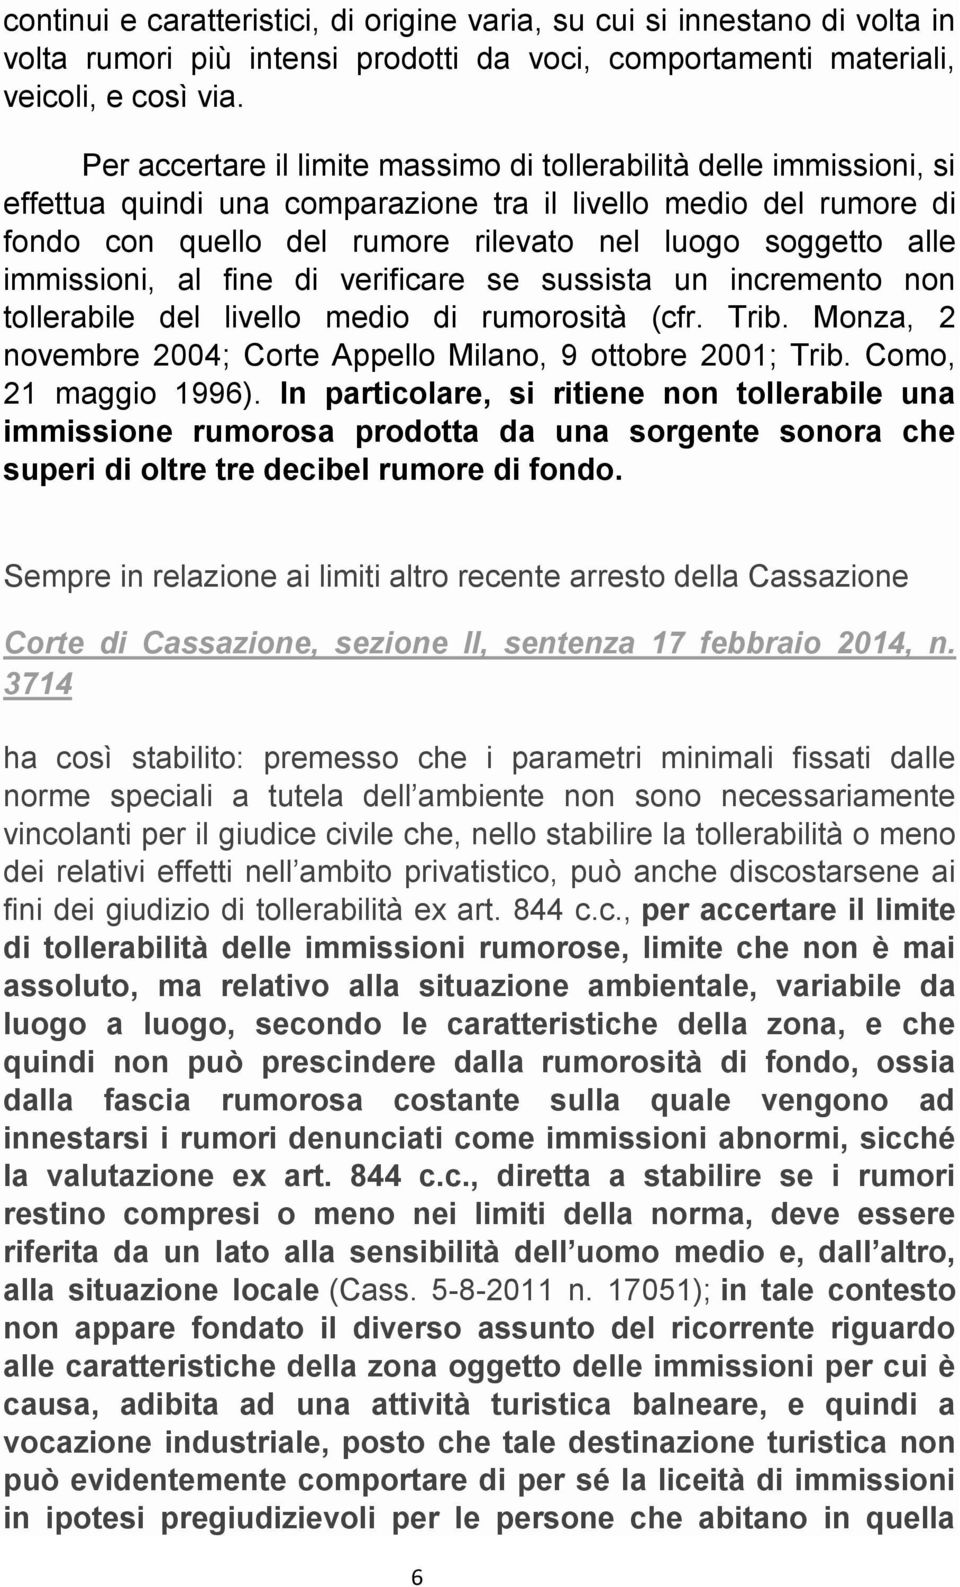 immissioni, al fine di verificare se sussista un incremento non tollerabile del livello medio di rumorosità (cfr. Trib. Monza, 2 novembre 2004; Corte Appello Milano, 9 ottobre 2001; Trib.